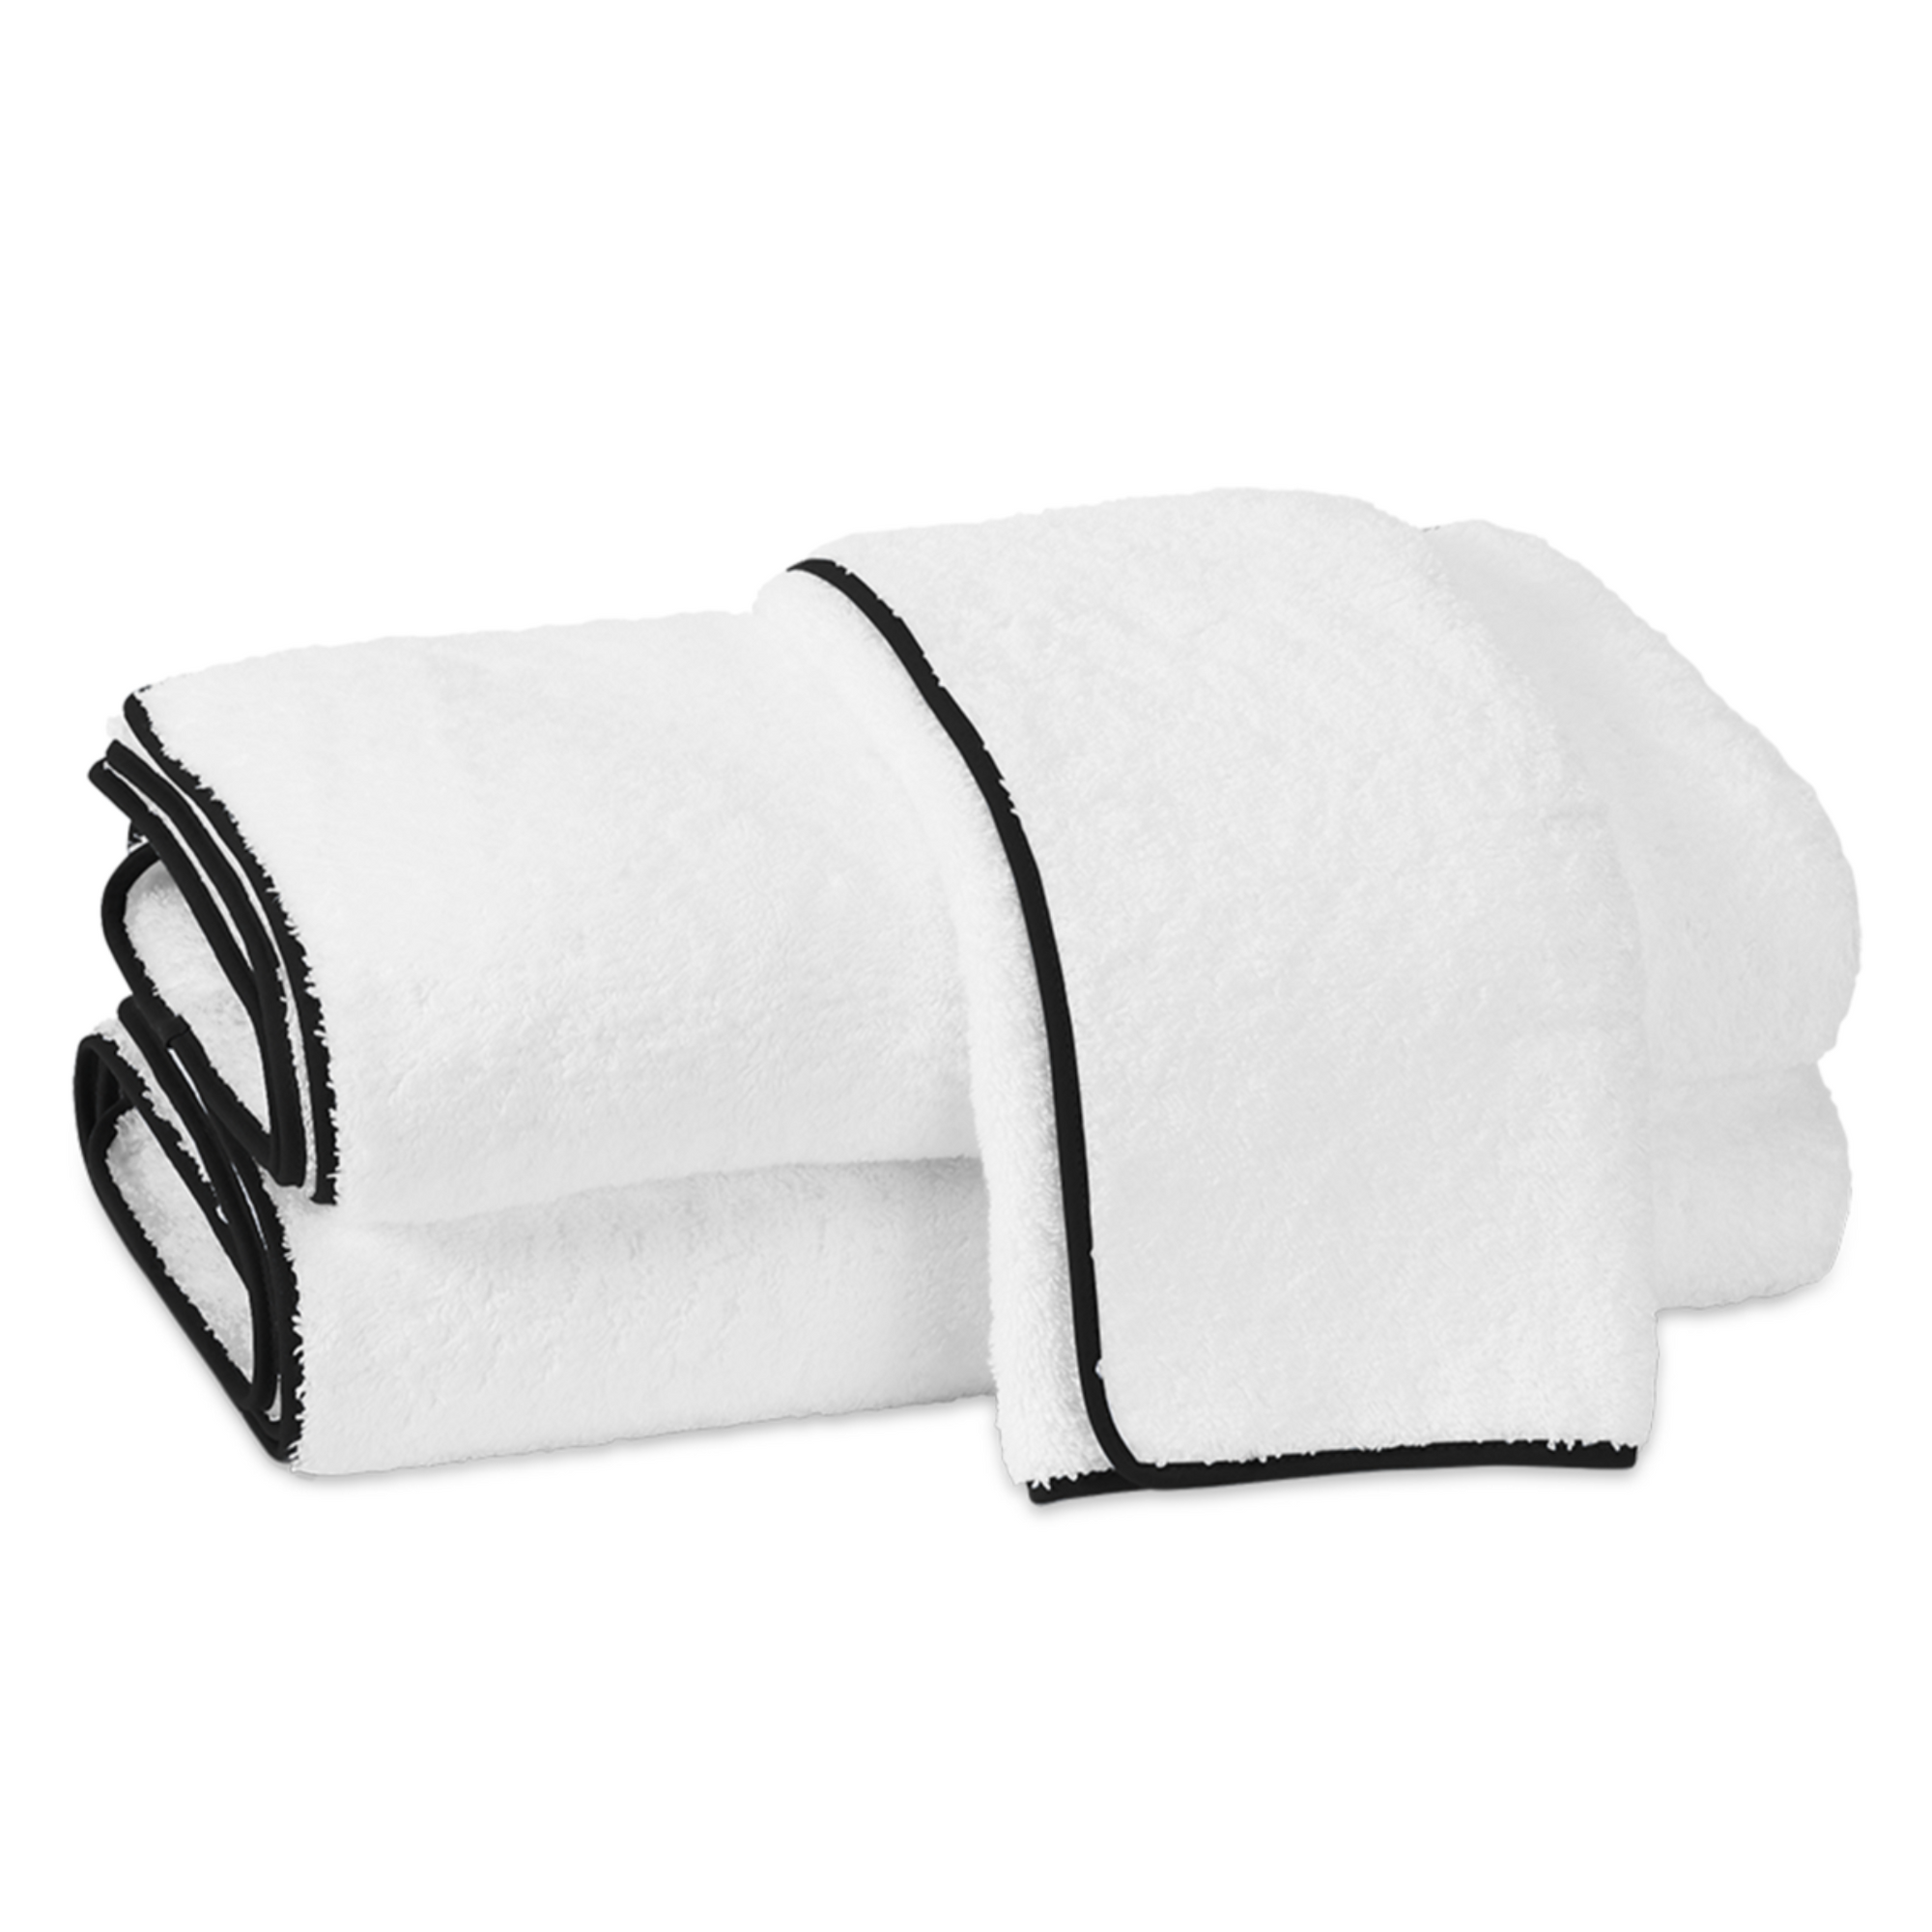 Silo Image of Matouk Cairo Bath Towels in White/Black Color